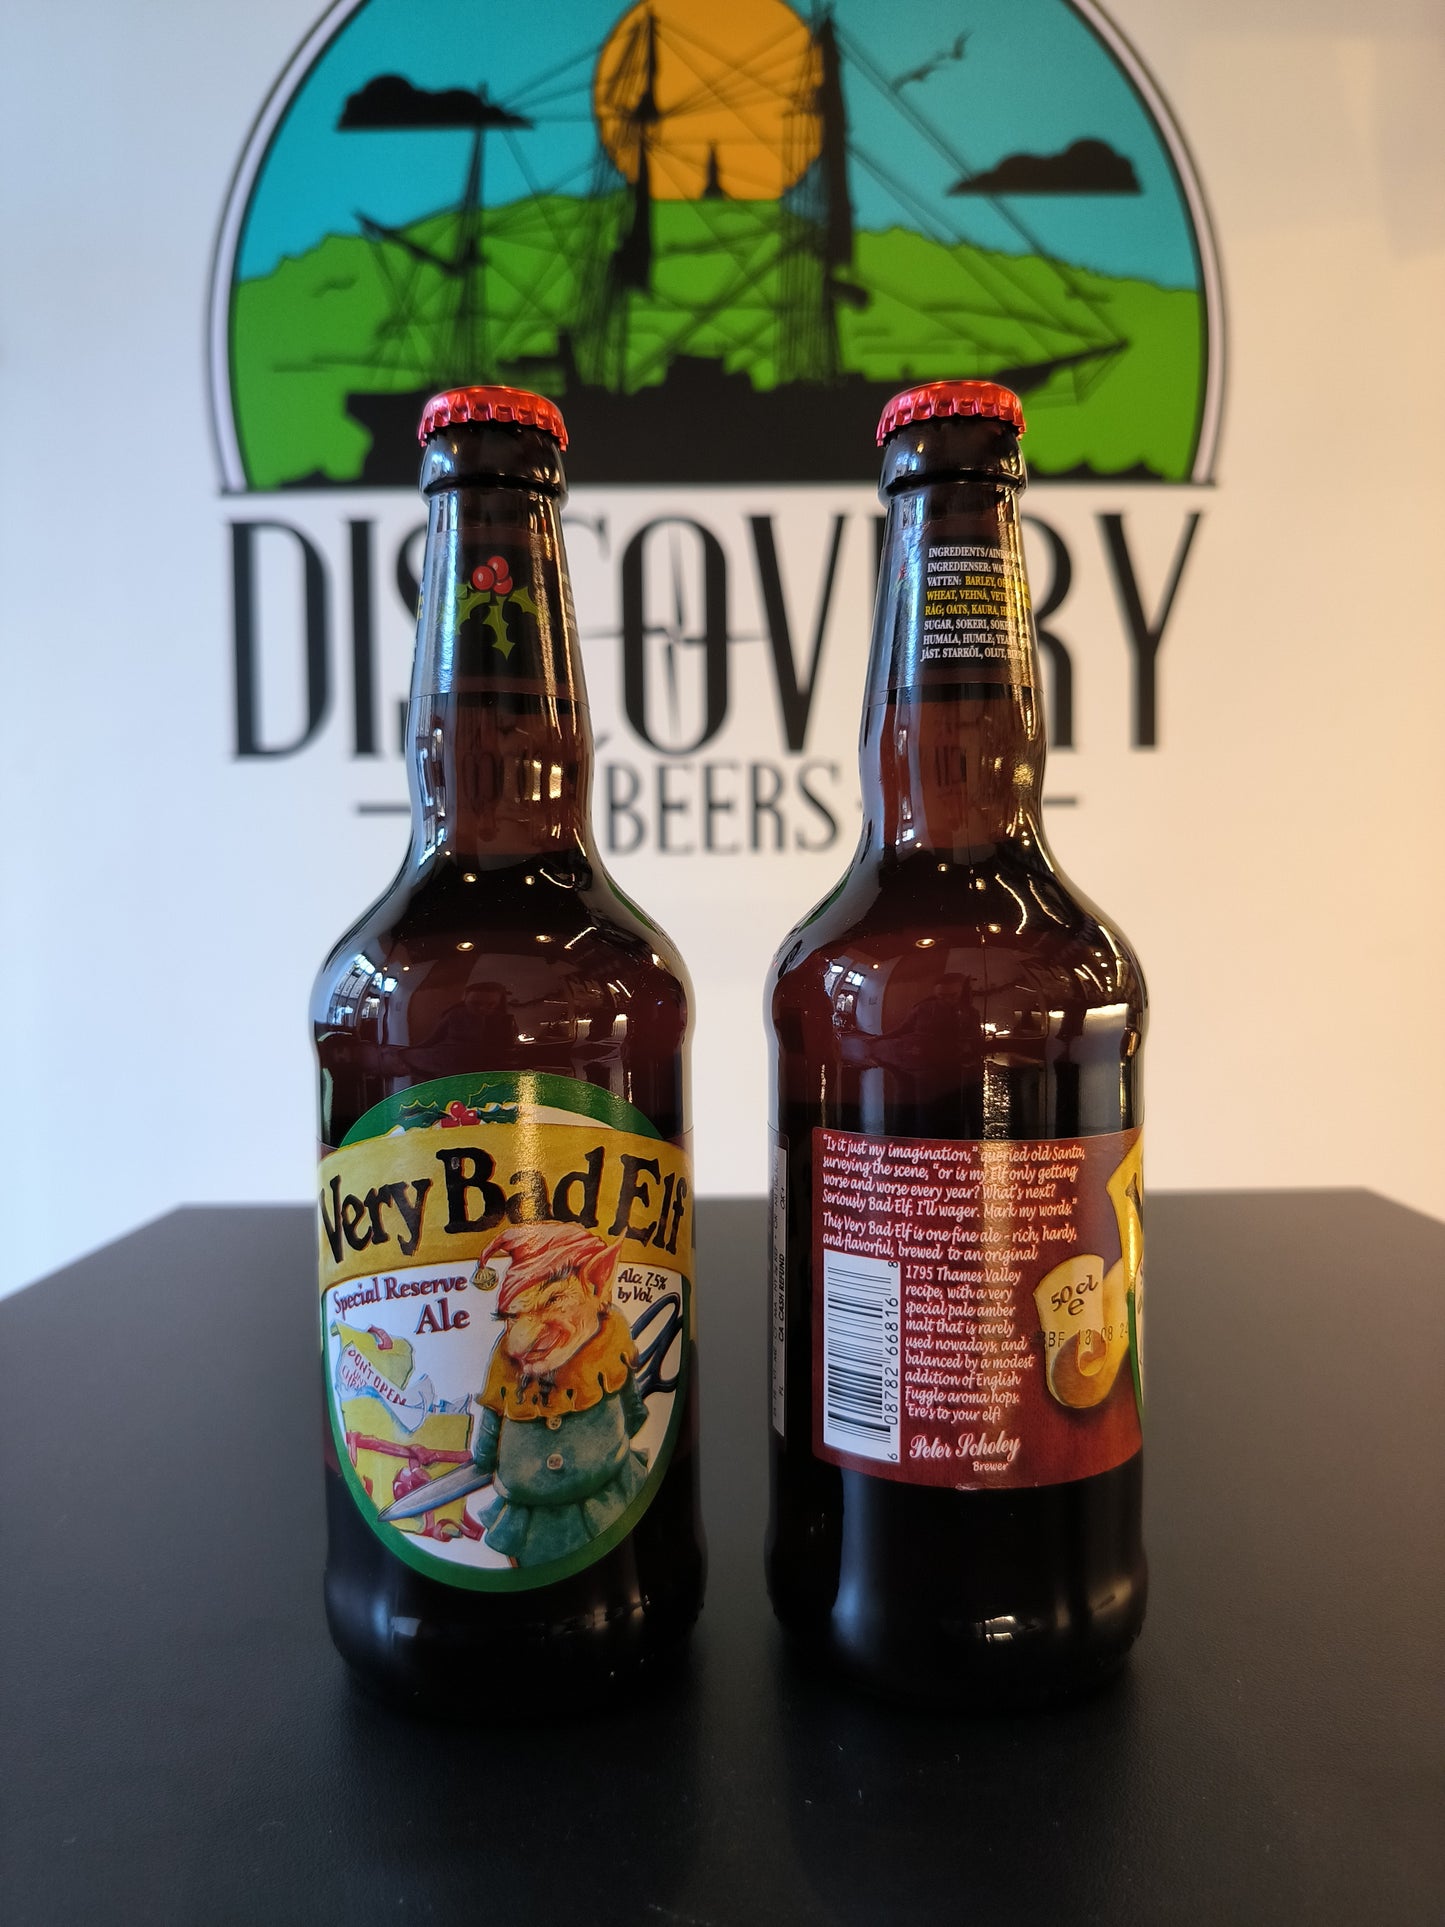 Ridgeway Brewery - Very Bad Elf